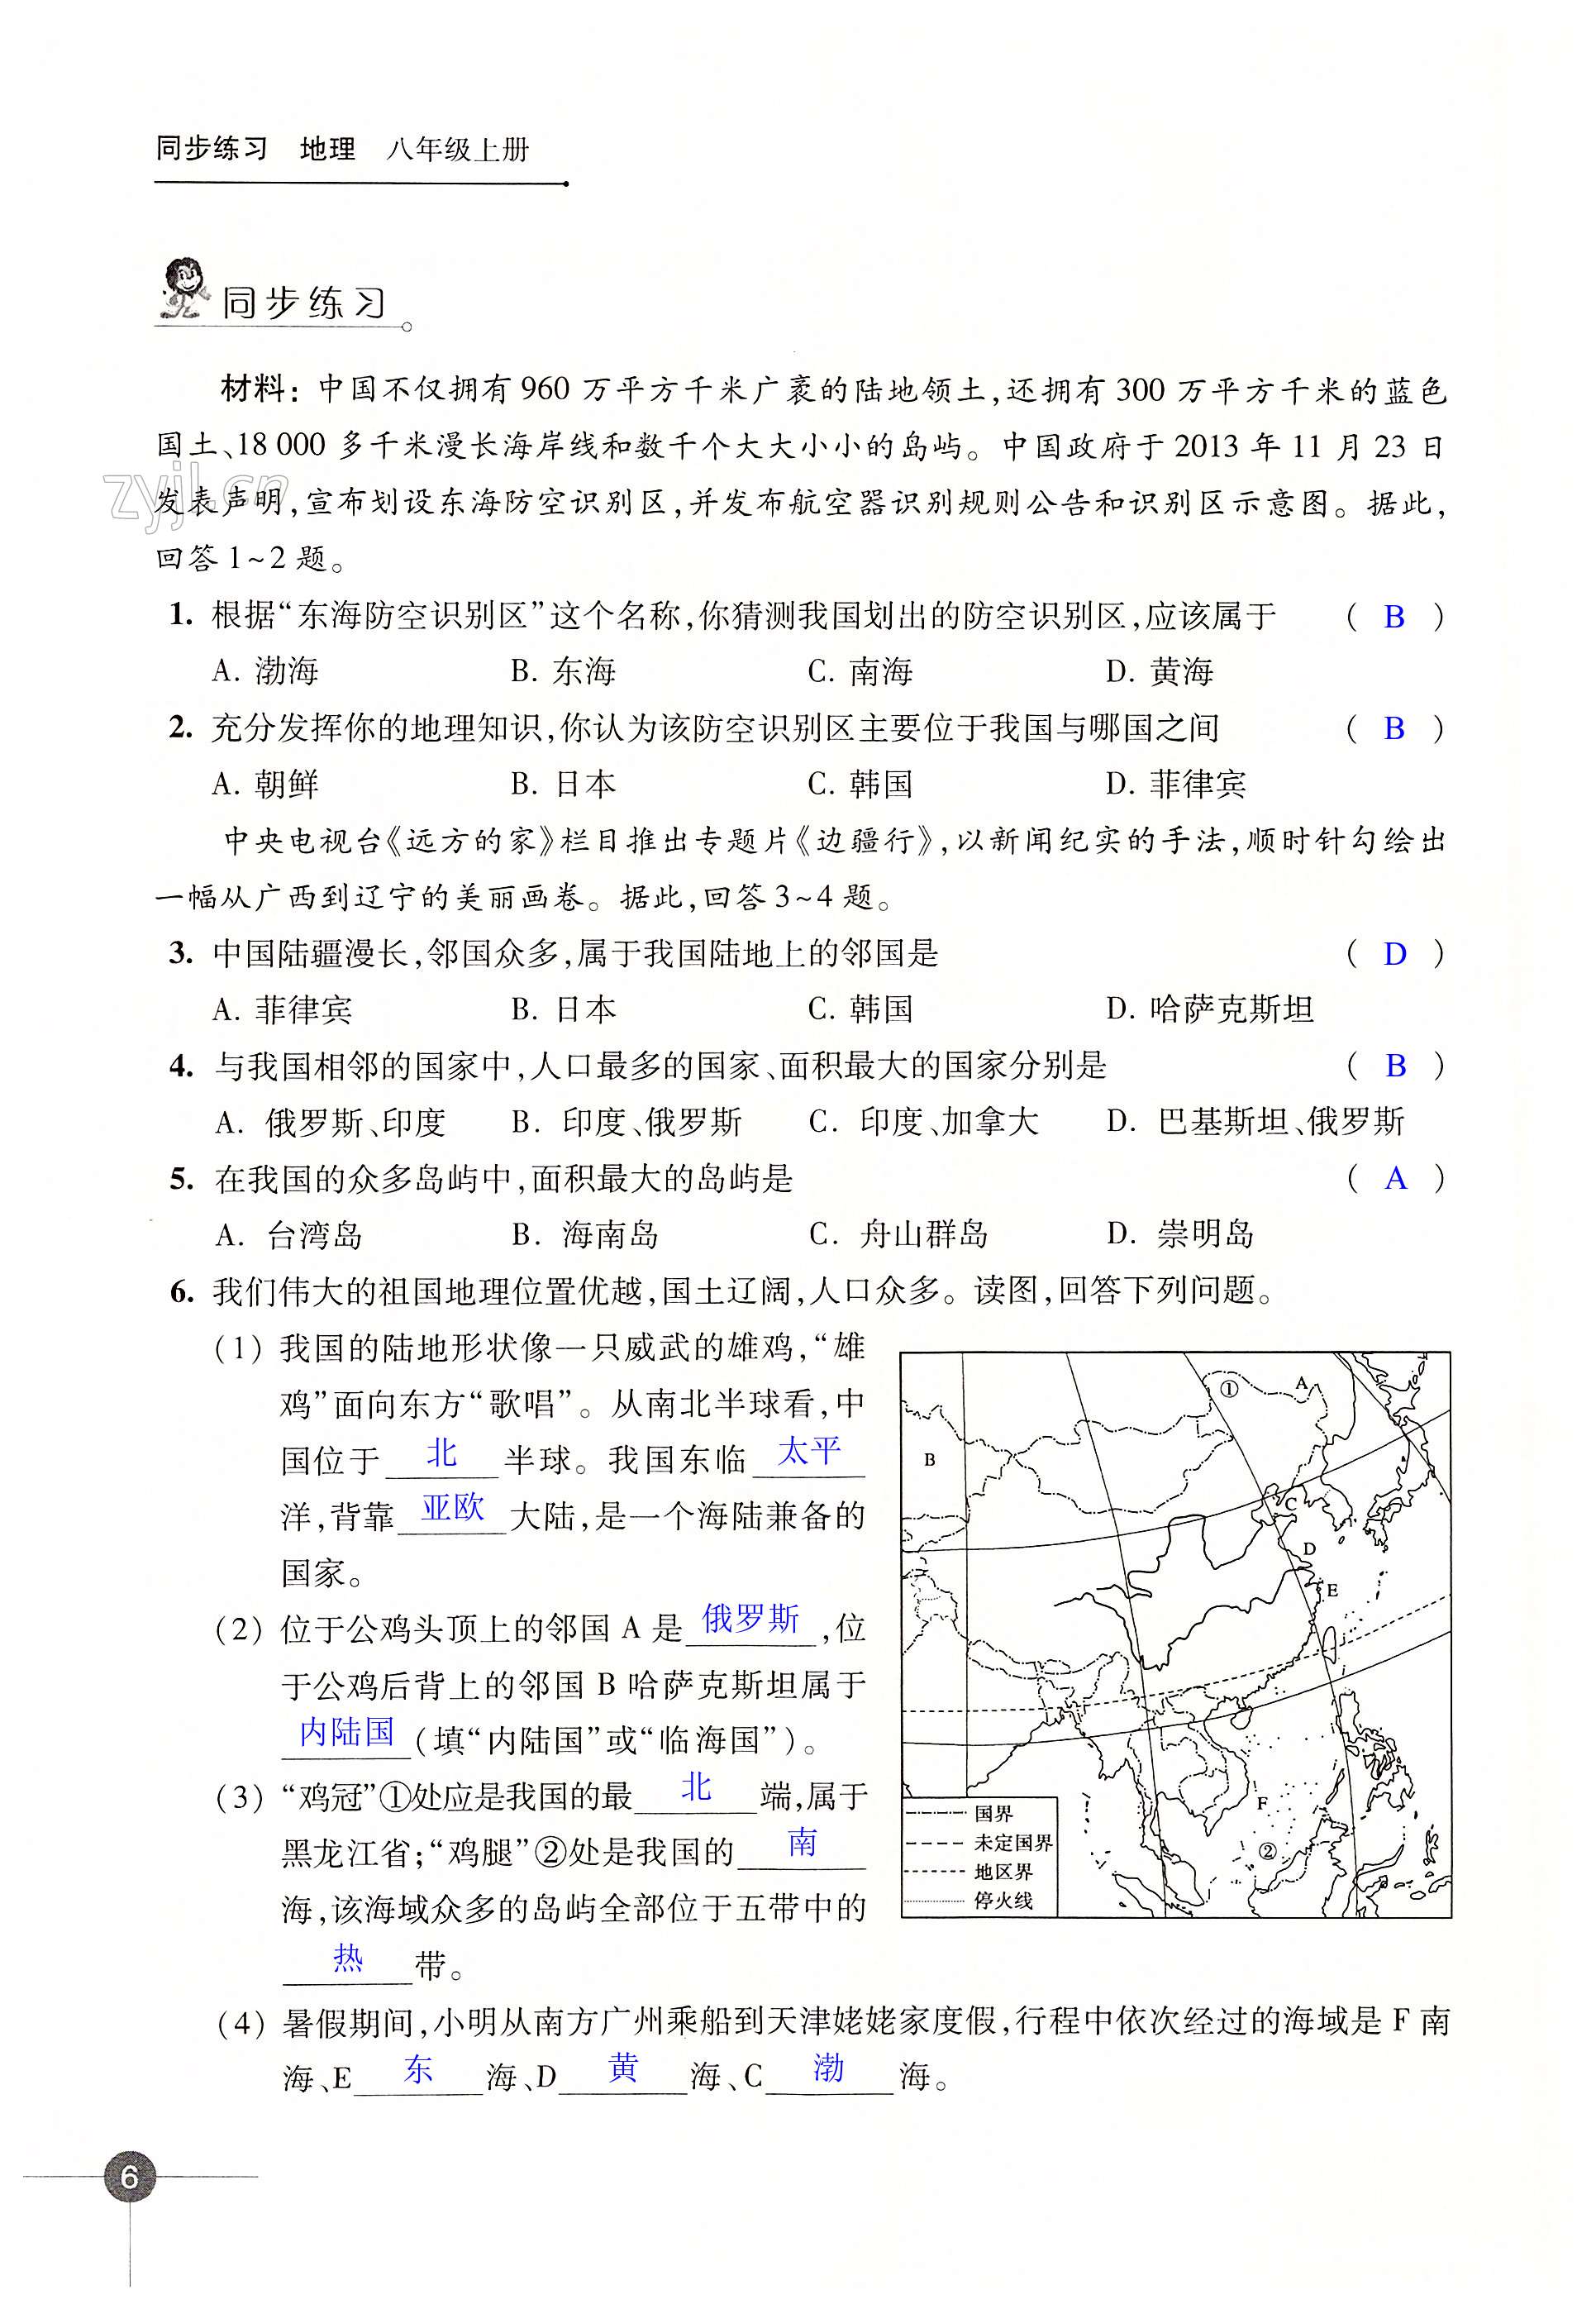 第一章 中国的疆域与人口 - 第6页